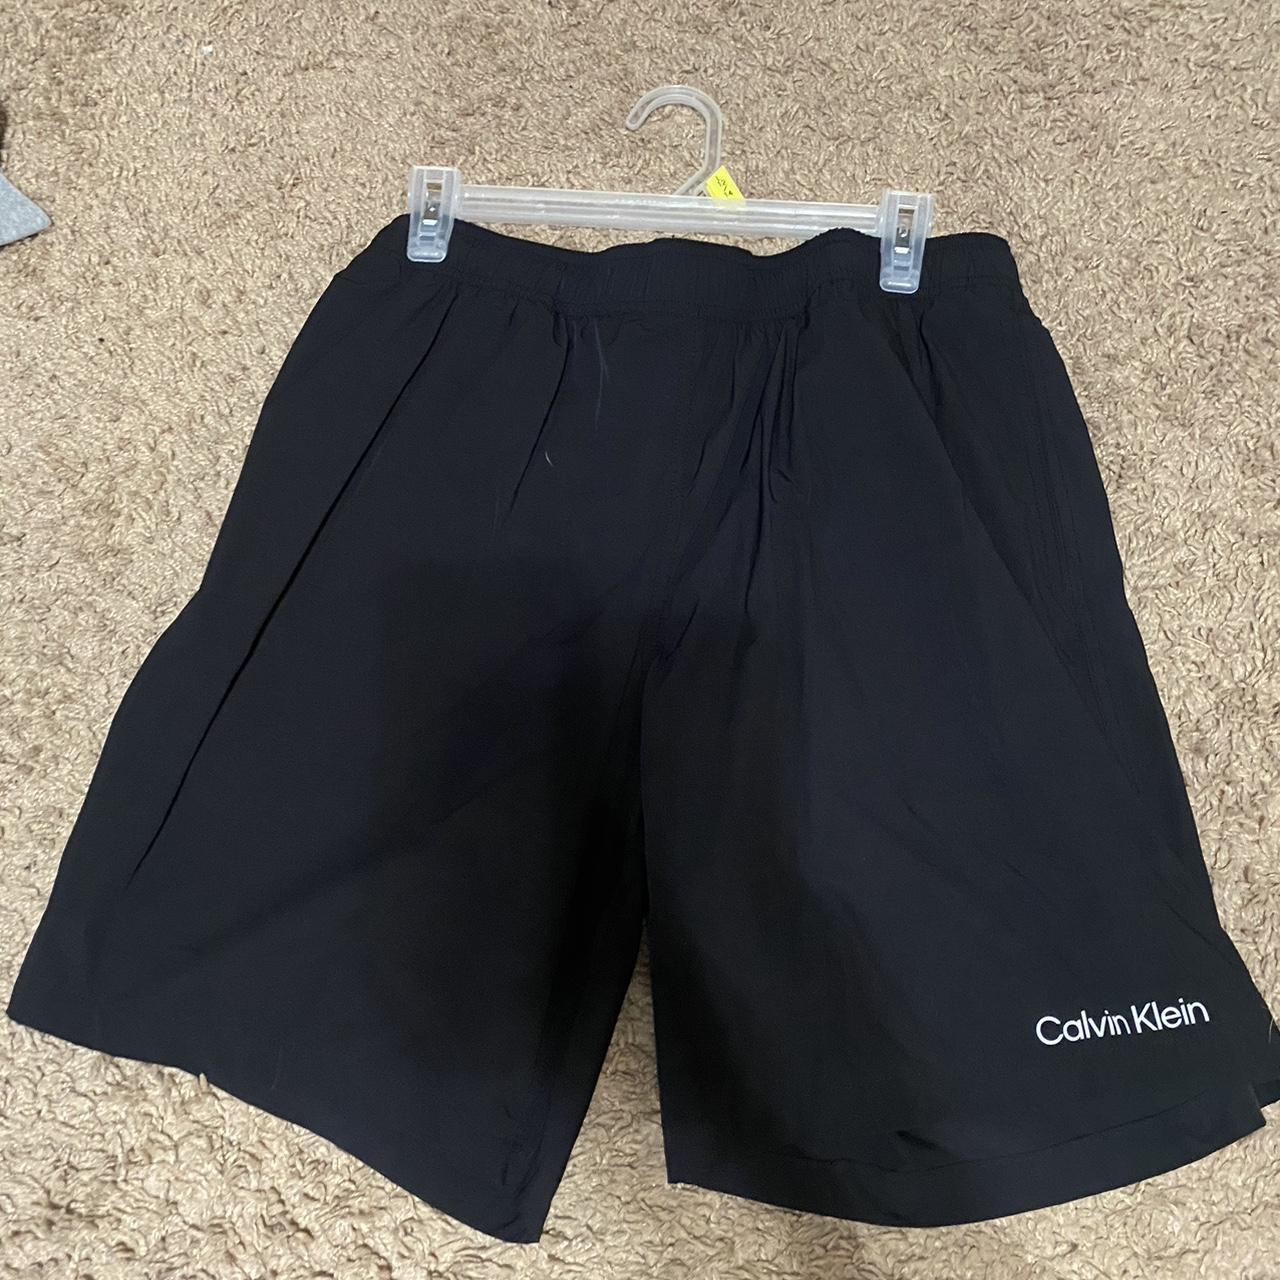 Calvin Klein black shorts - Depop